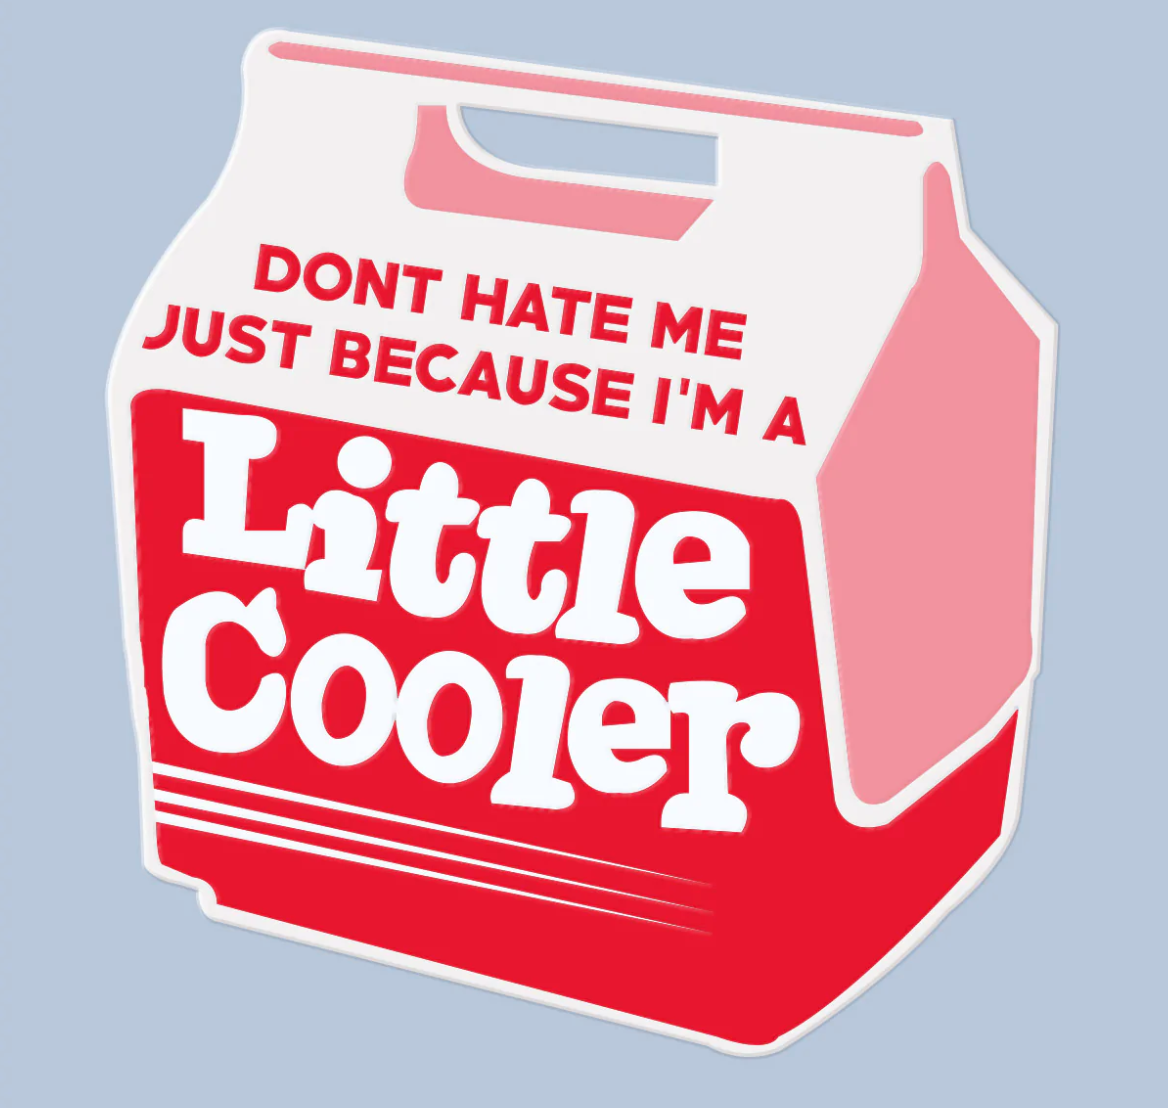 Little Cooler Sticker